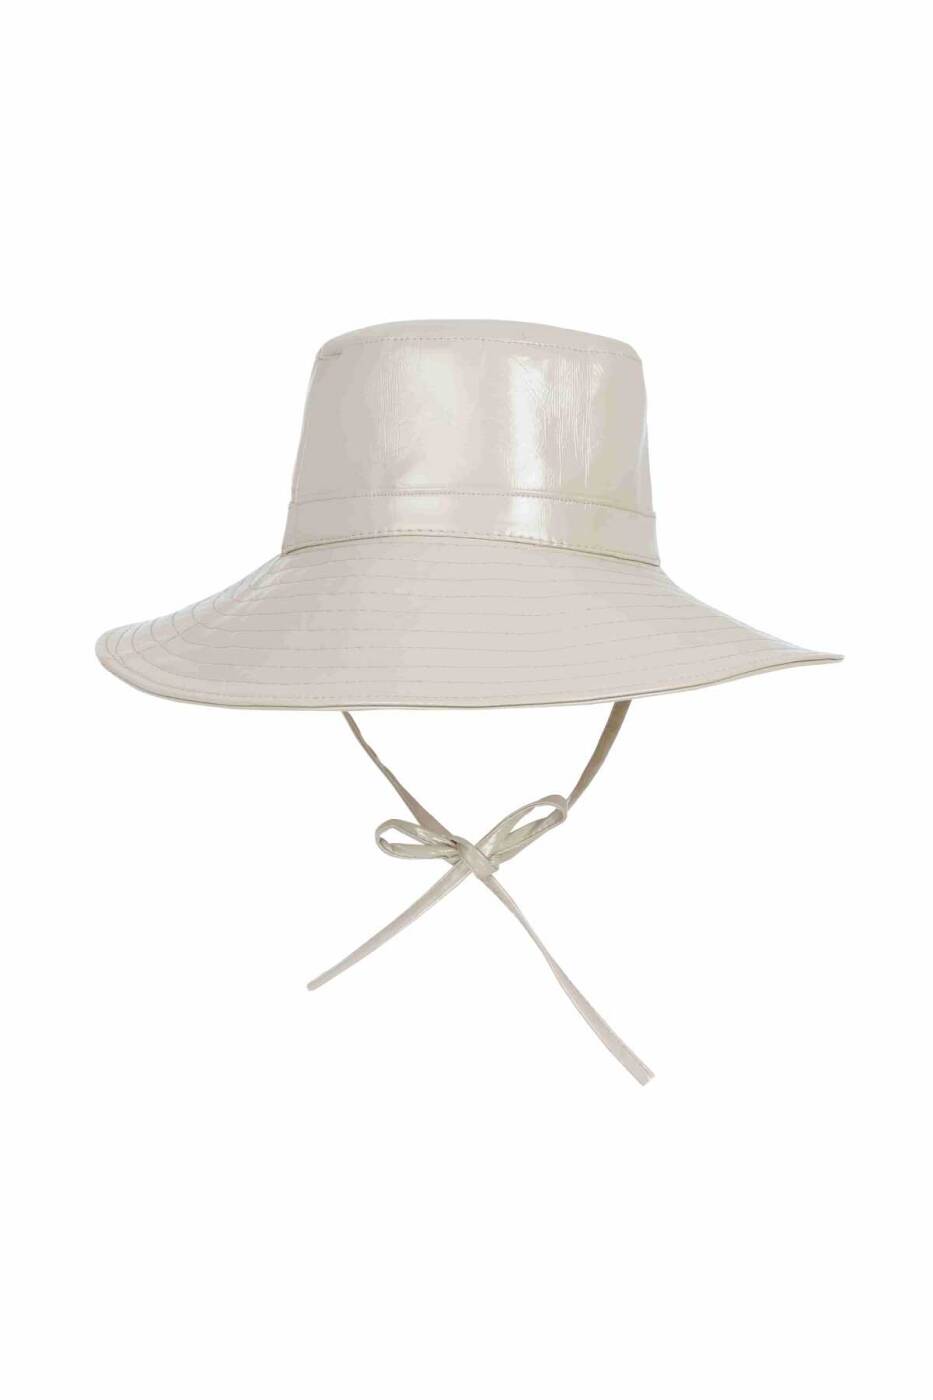  Bağlamalı Şapka Bej - 2